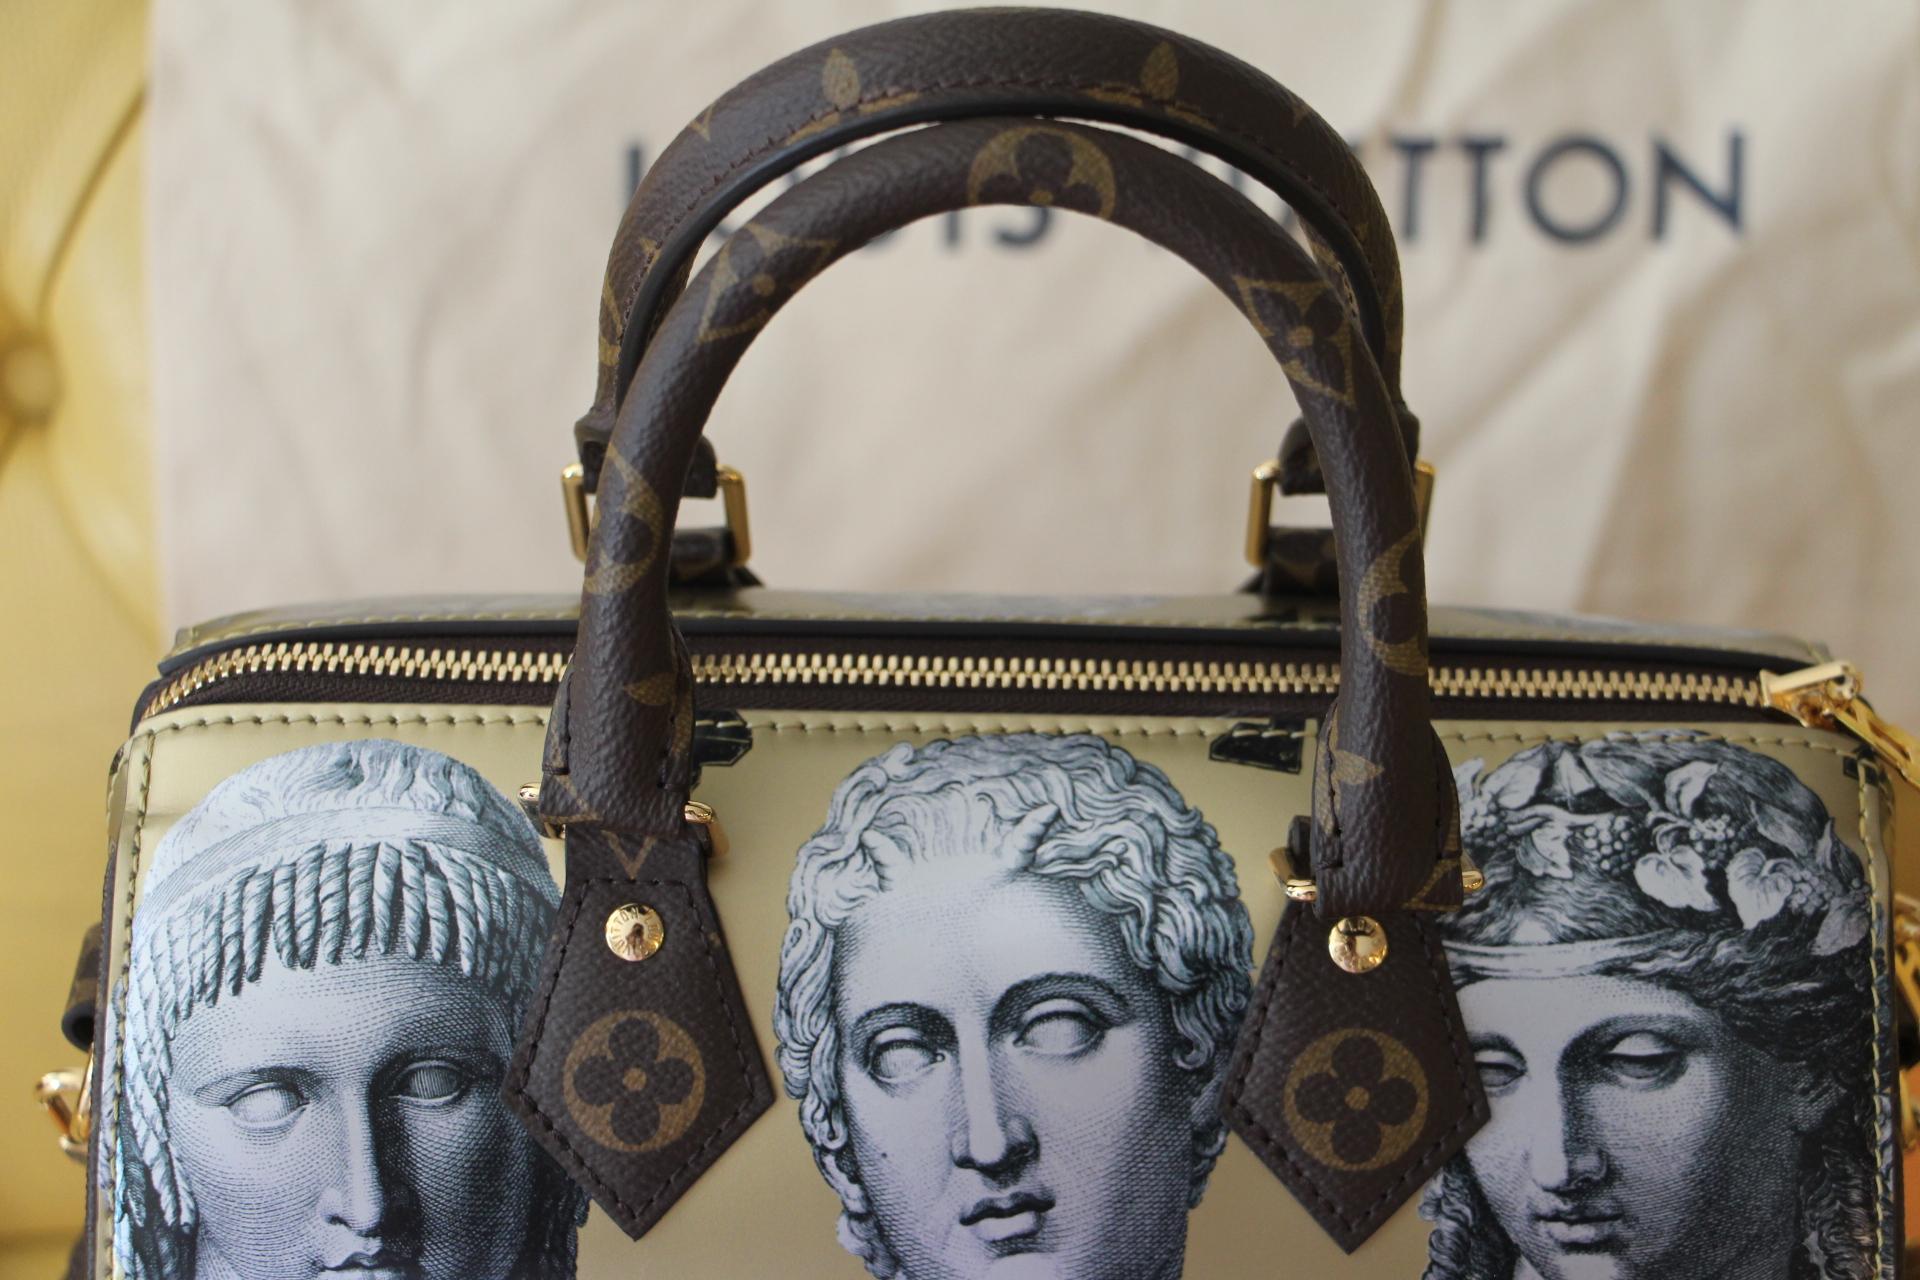 Diese ganz aus Leder gefertigte Speedy Bandoulière 25 Handtasche ist ganz in Gold- und Metallic-Farben gehalten; sie zeigt Drucke von Statuenköpfen, die von dem famosen italienischen Künstler Piero Fornasetti geschaffen wurden. 
Außerdem hat sie